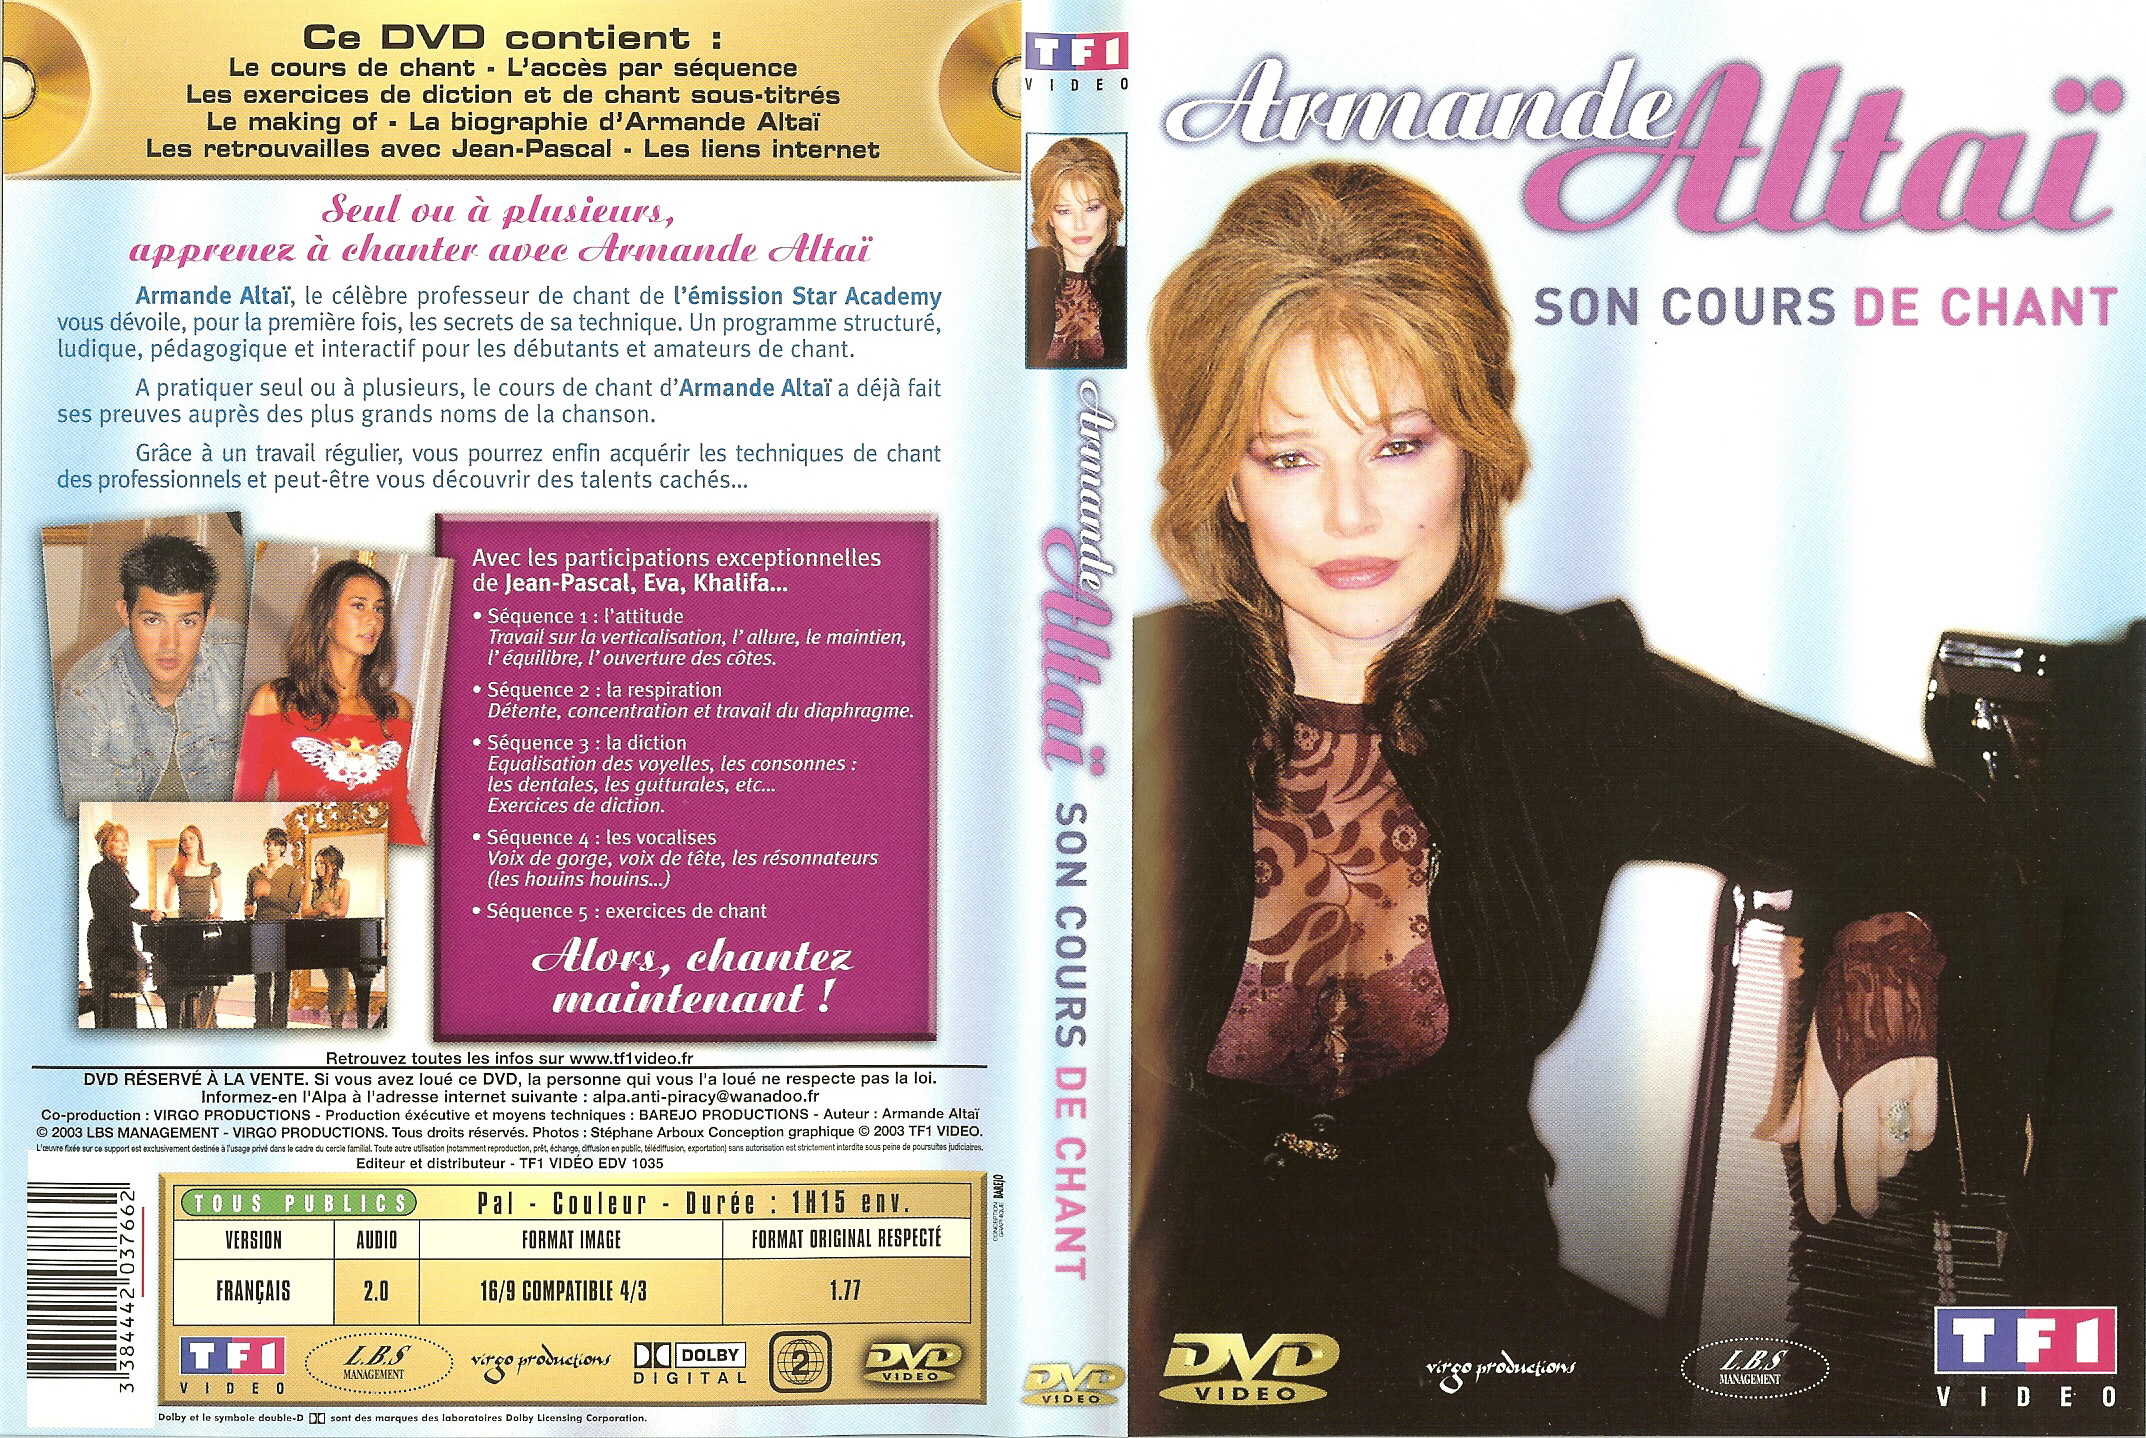 Jaquette DVD Armande Altai son cours de chant